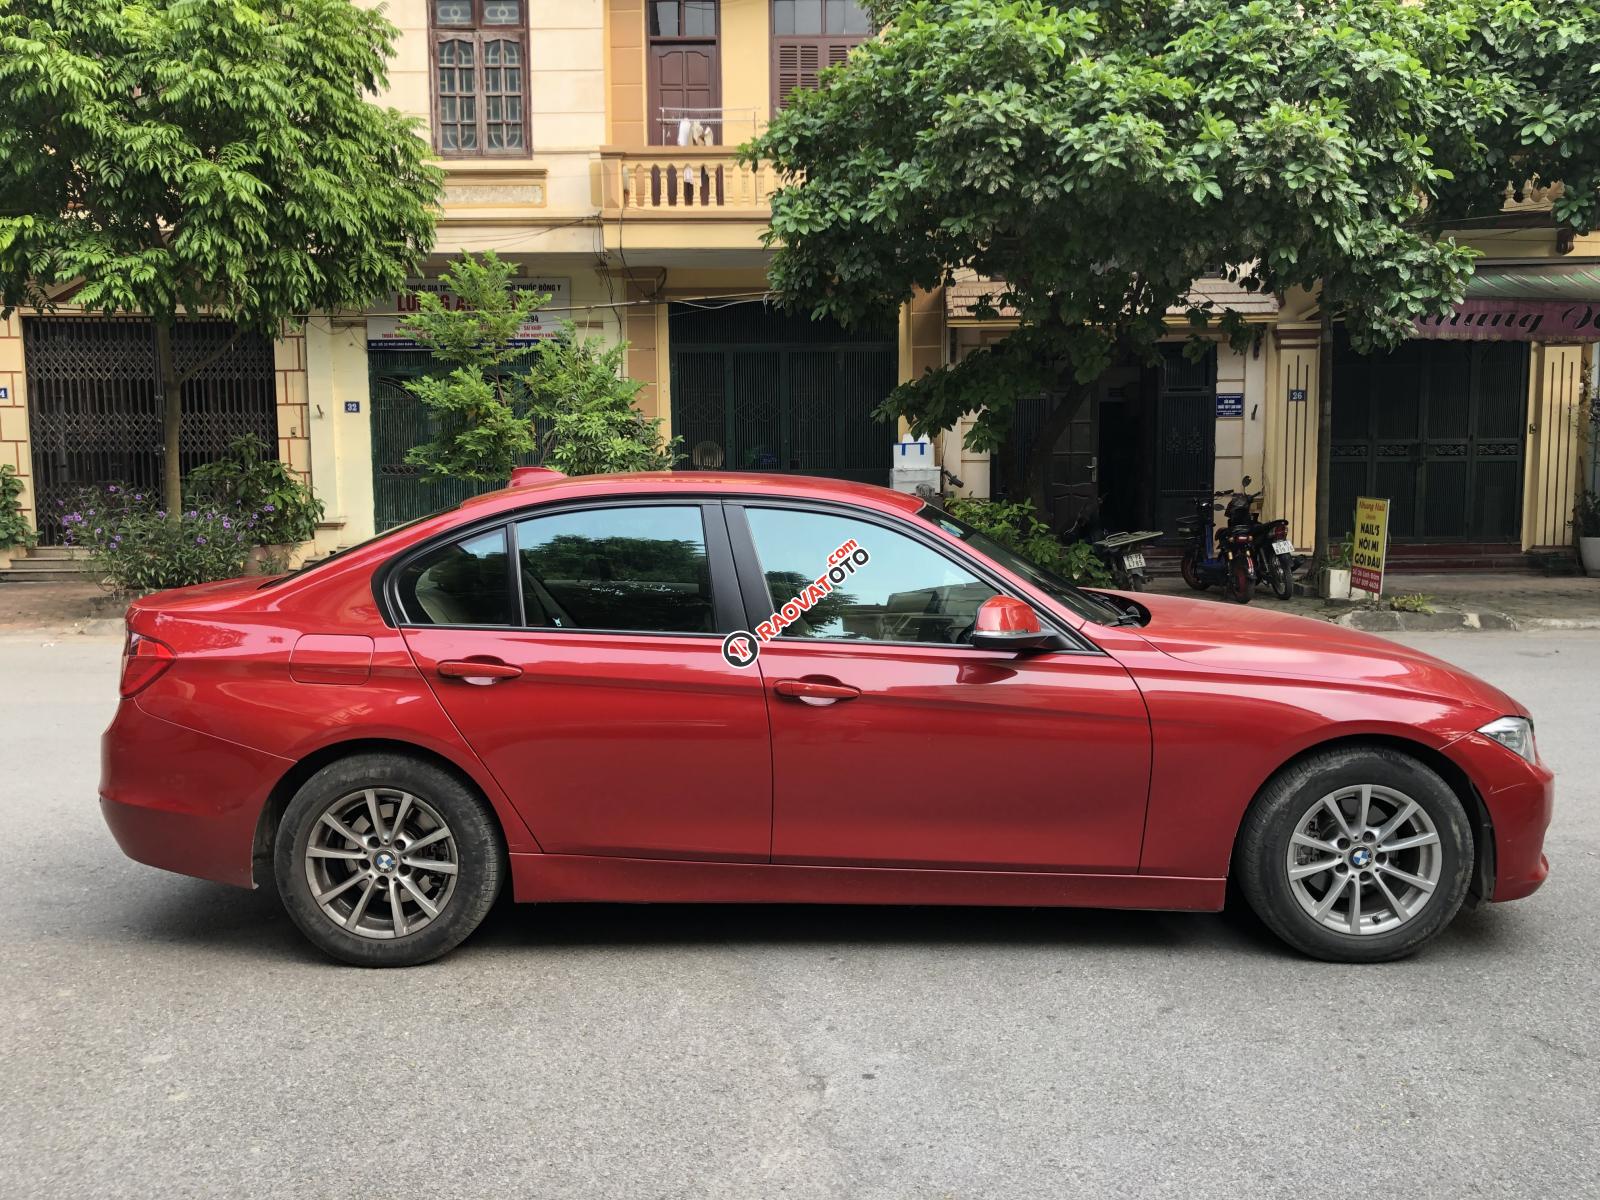 Chính chủ cần bán BMW 3 Series 320i đời 2012, màu đỏ, xe nhập liên hệ - 0989883329-4